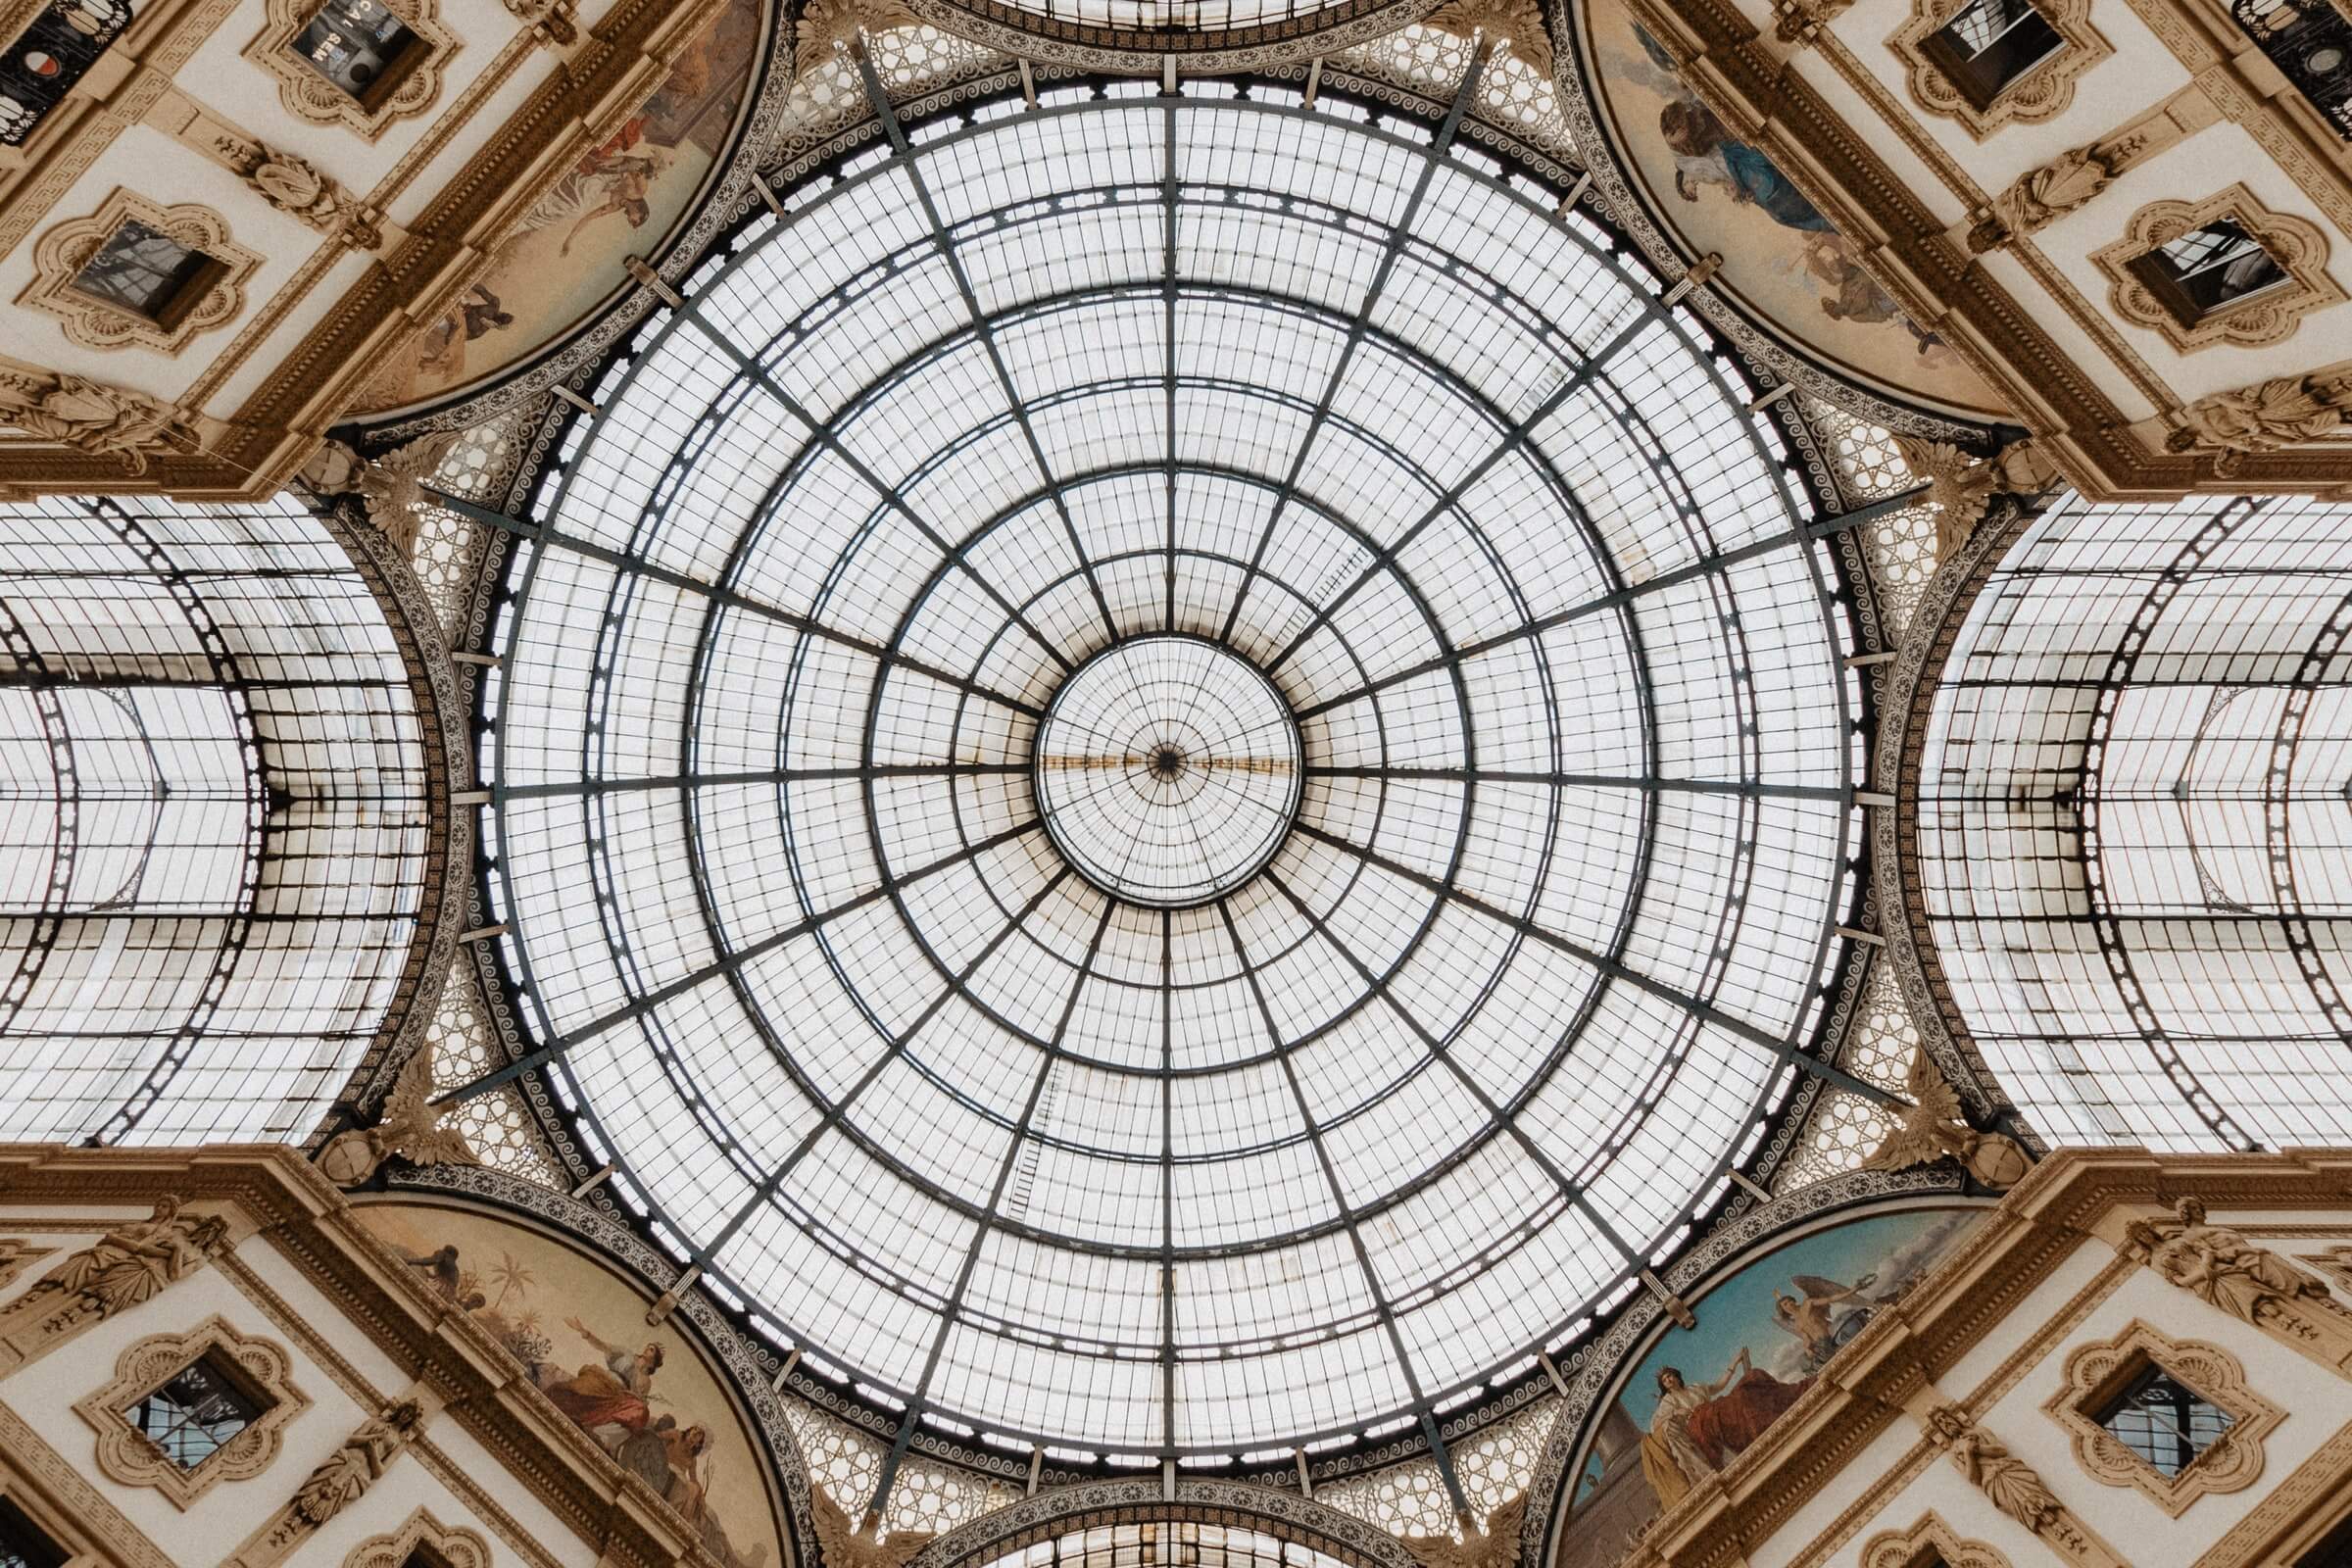 2 days in Milan, Milan, Italy, Galleria Vittorio II, symmetrical windows, shopping street in Milan